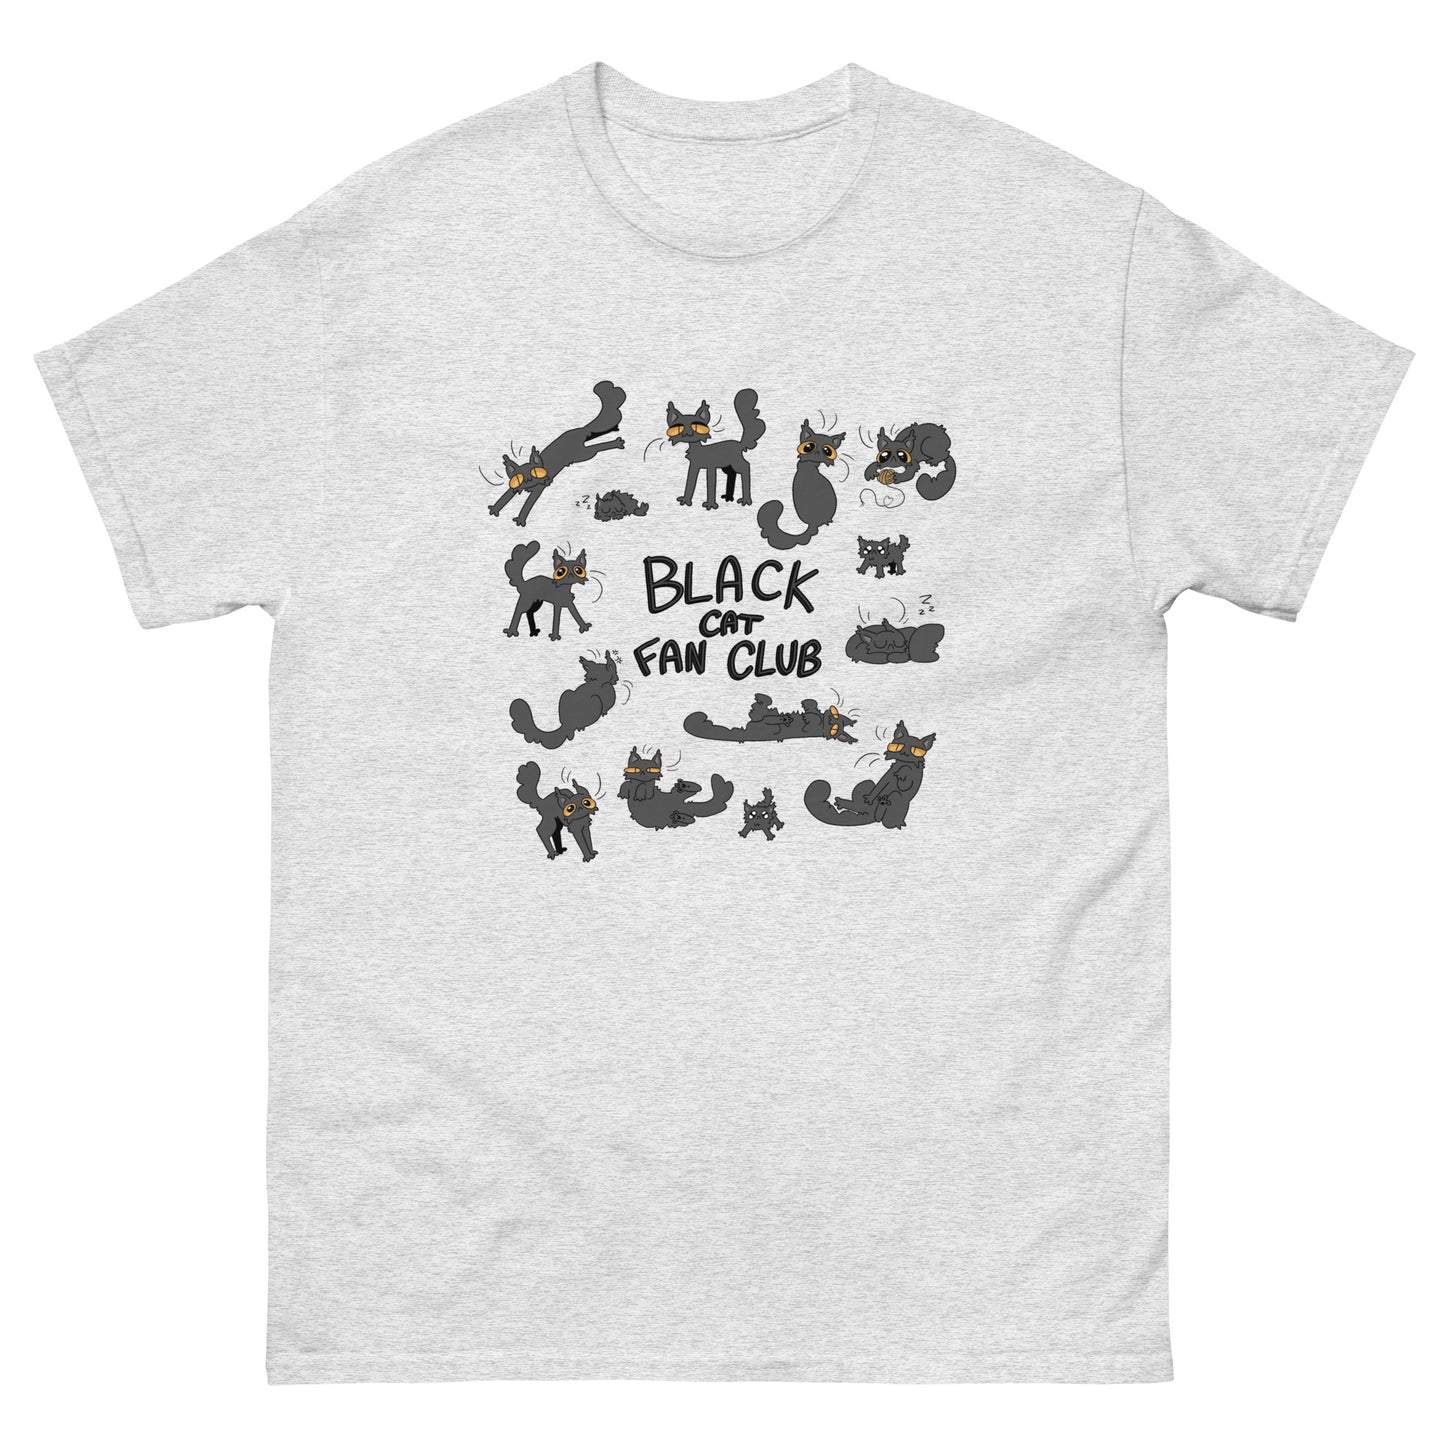 Black Cat Fan Club T-Shirt